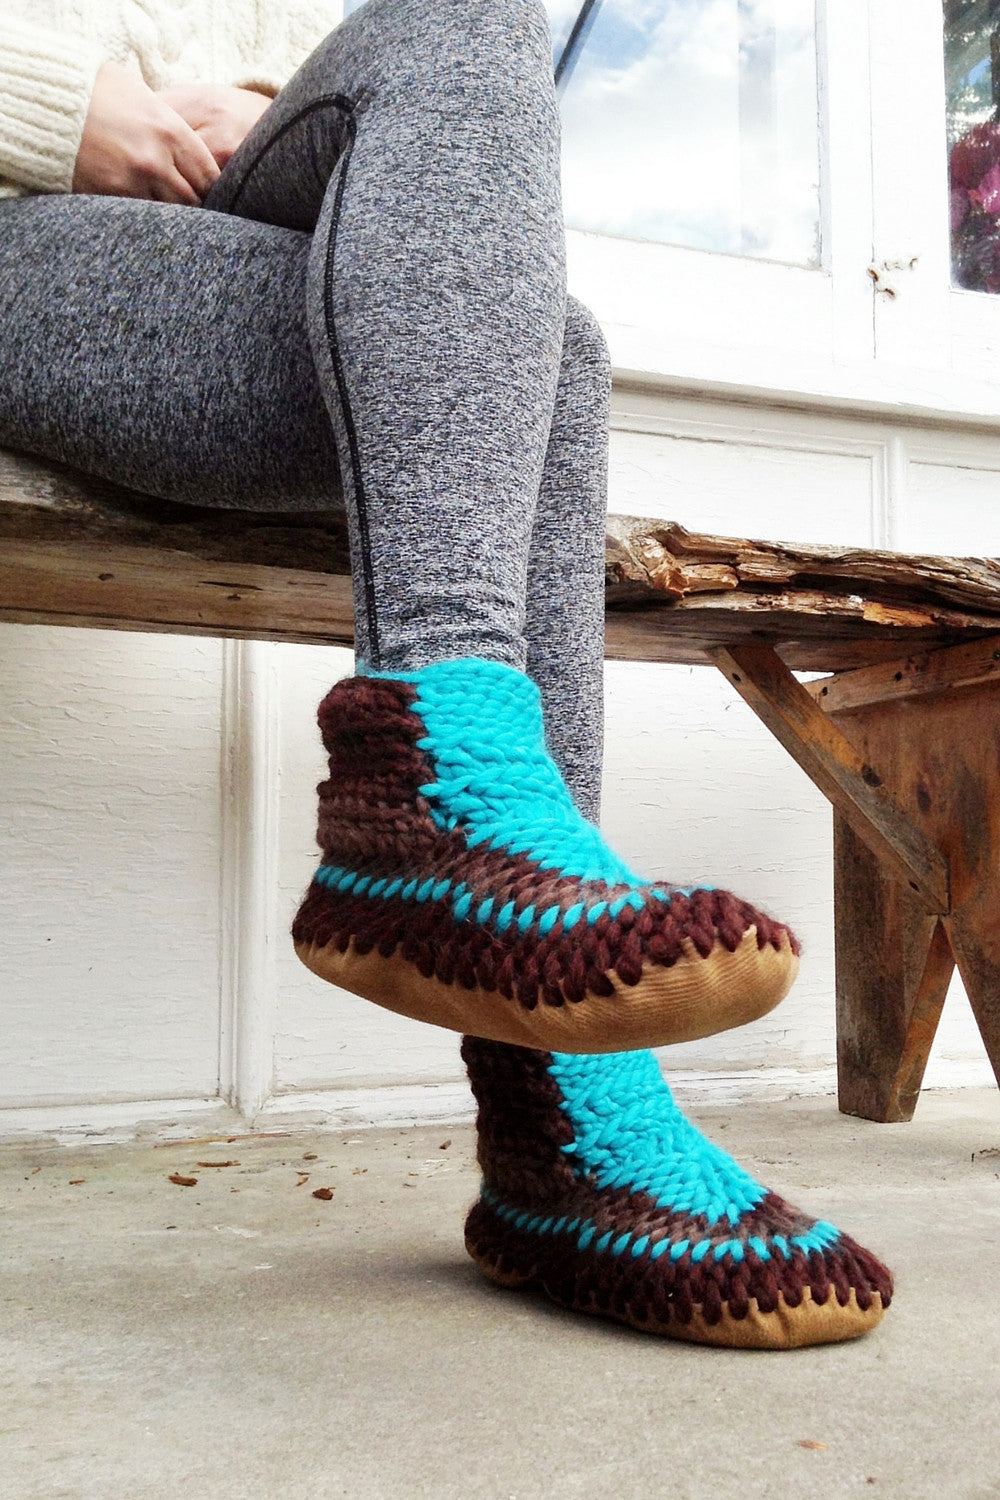 Buy knit slipper socks for women at